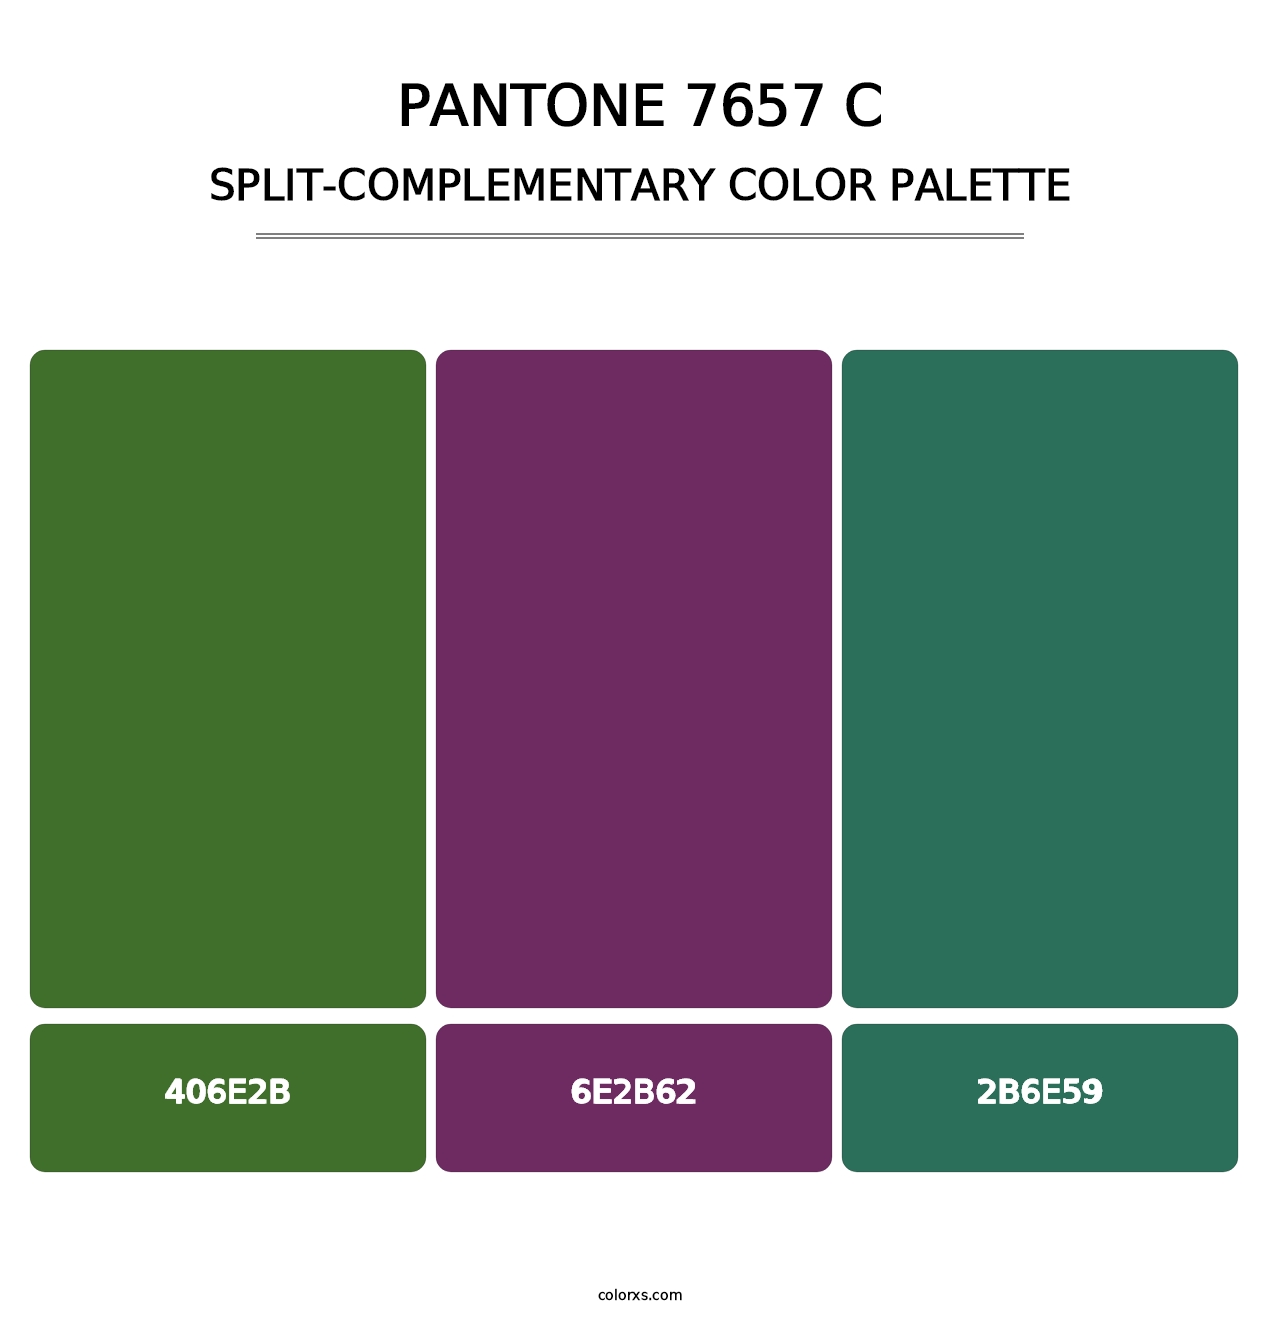 PANTONE 7657 C - Split-Complementary Color Palette